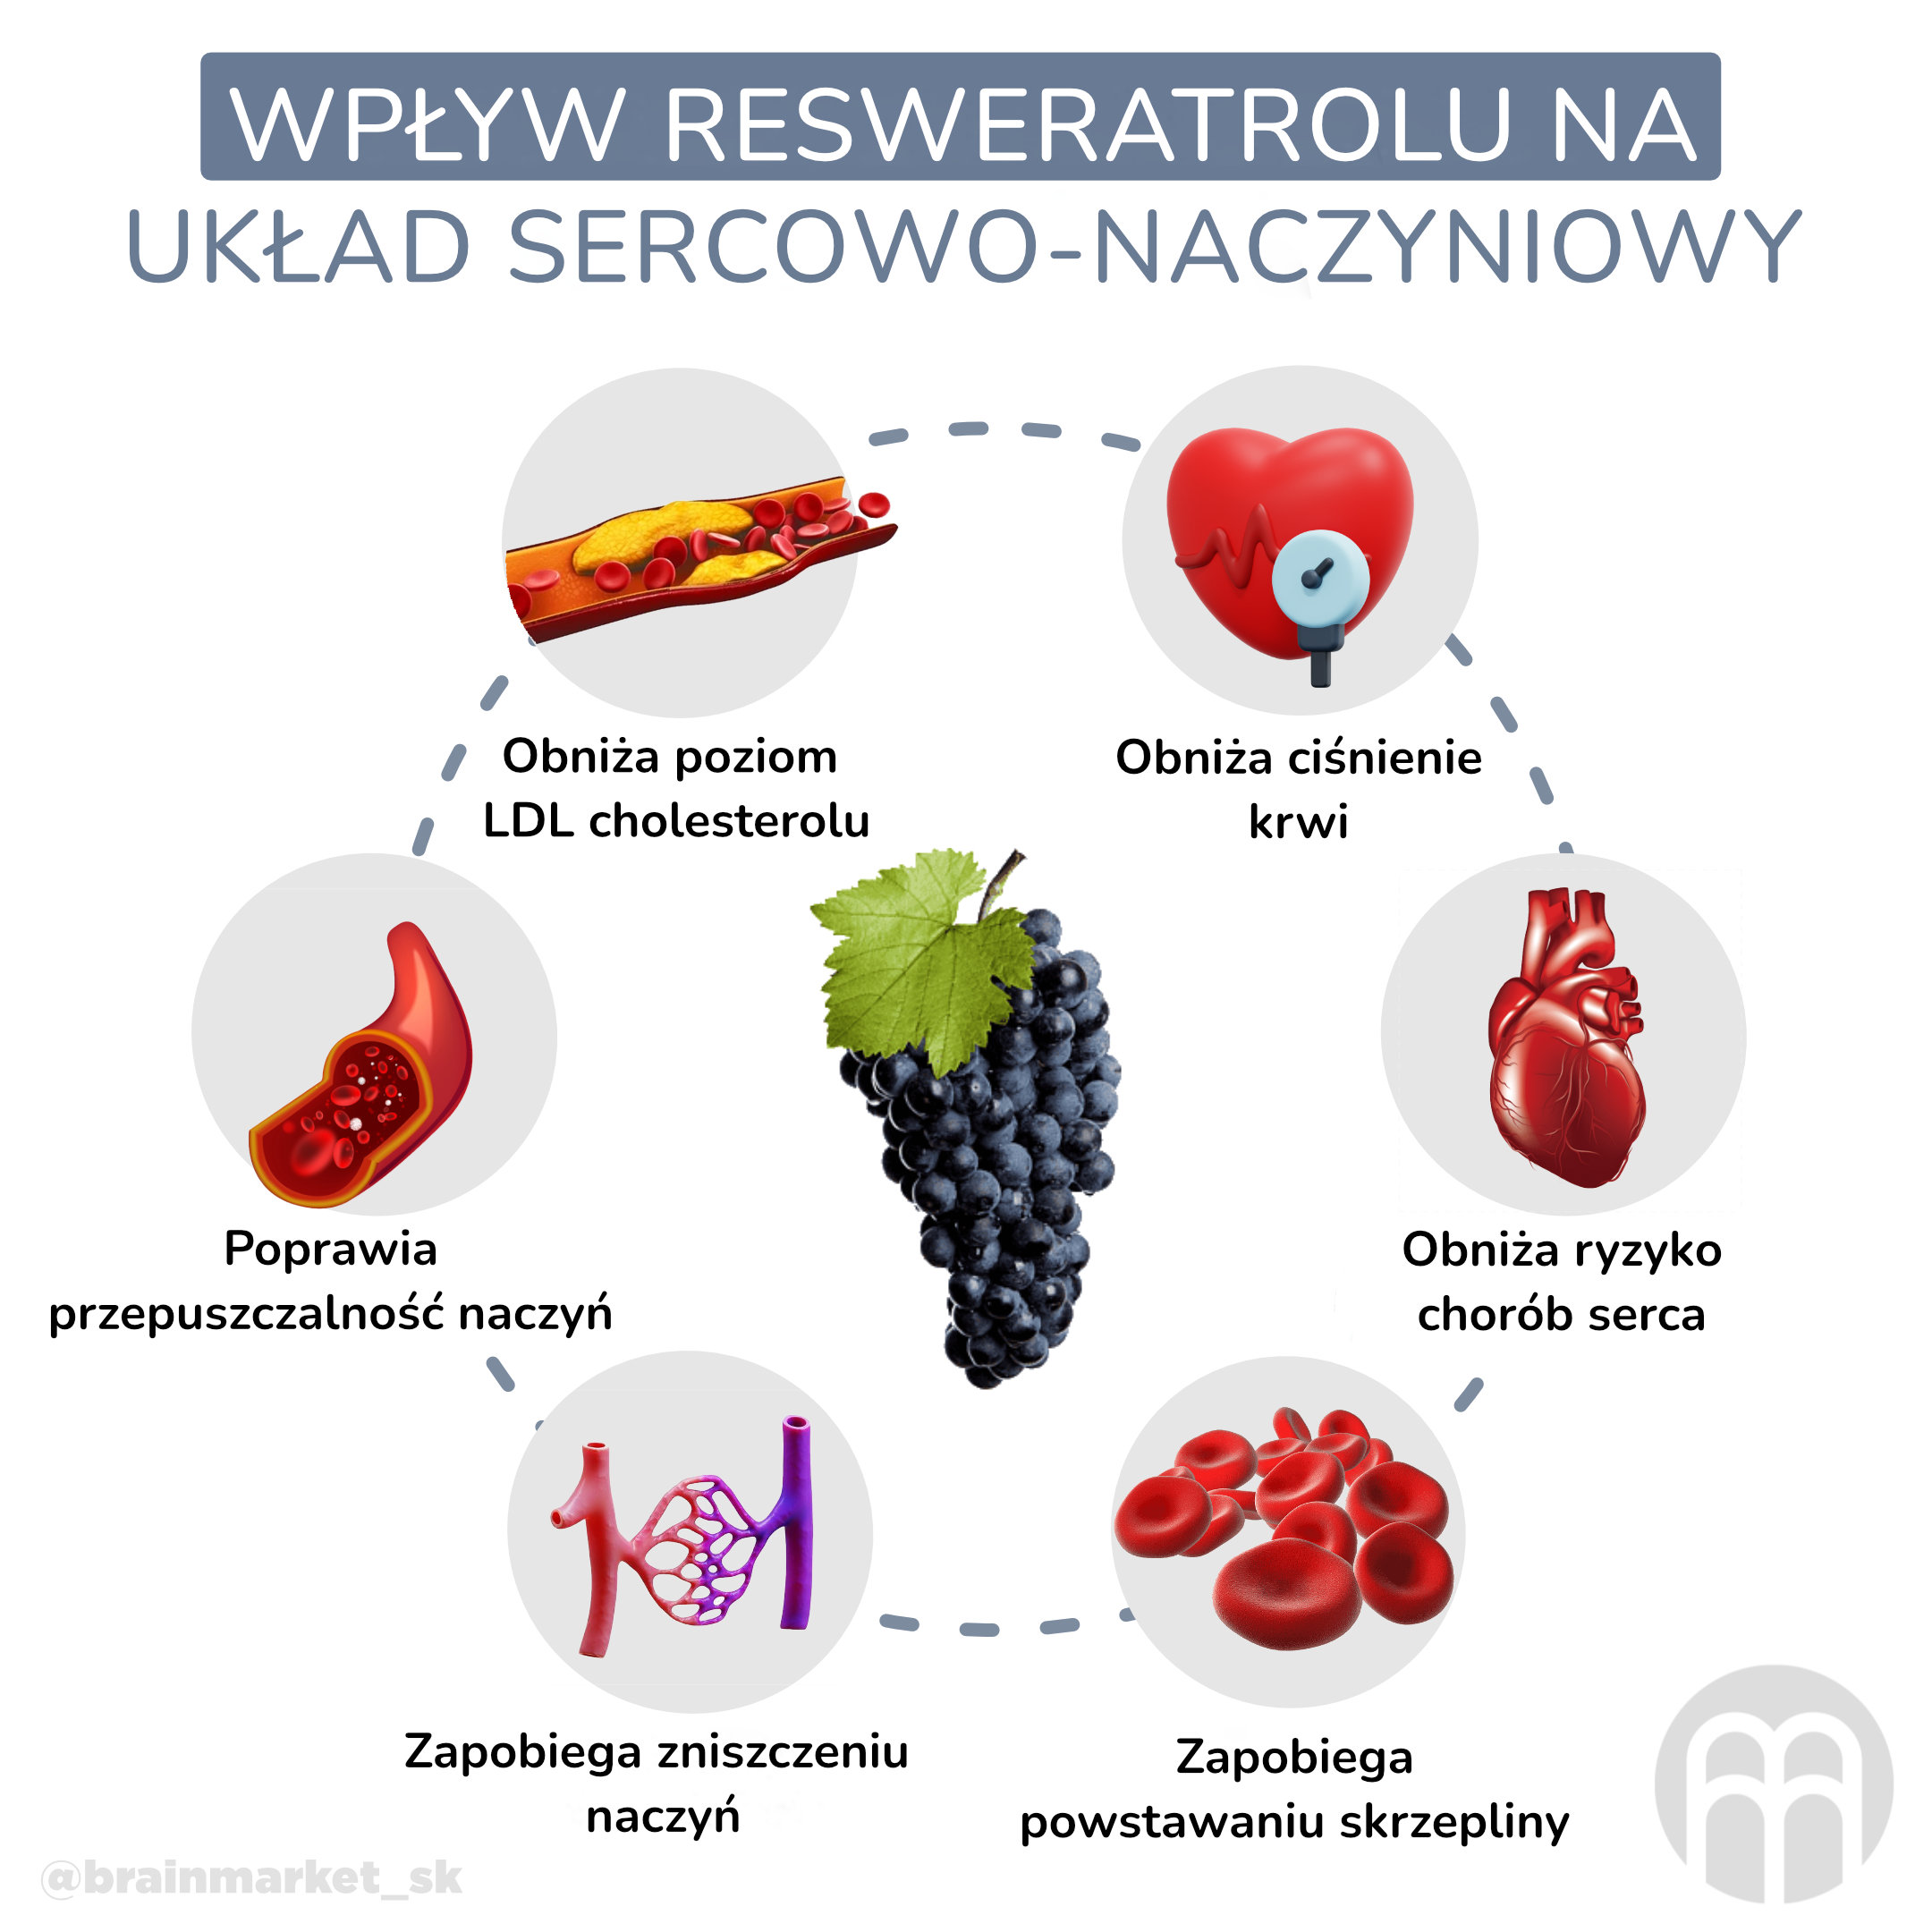 vliv resveratrolu na kardiovaskularni system_infografika_pl